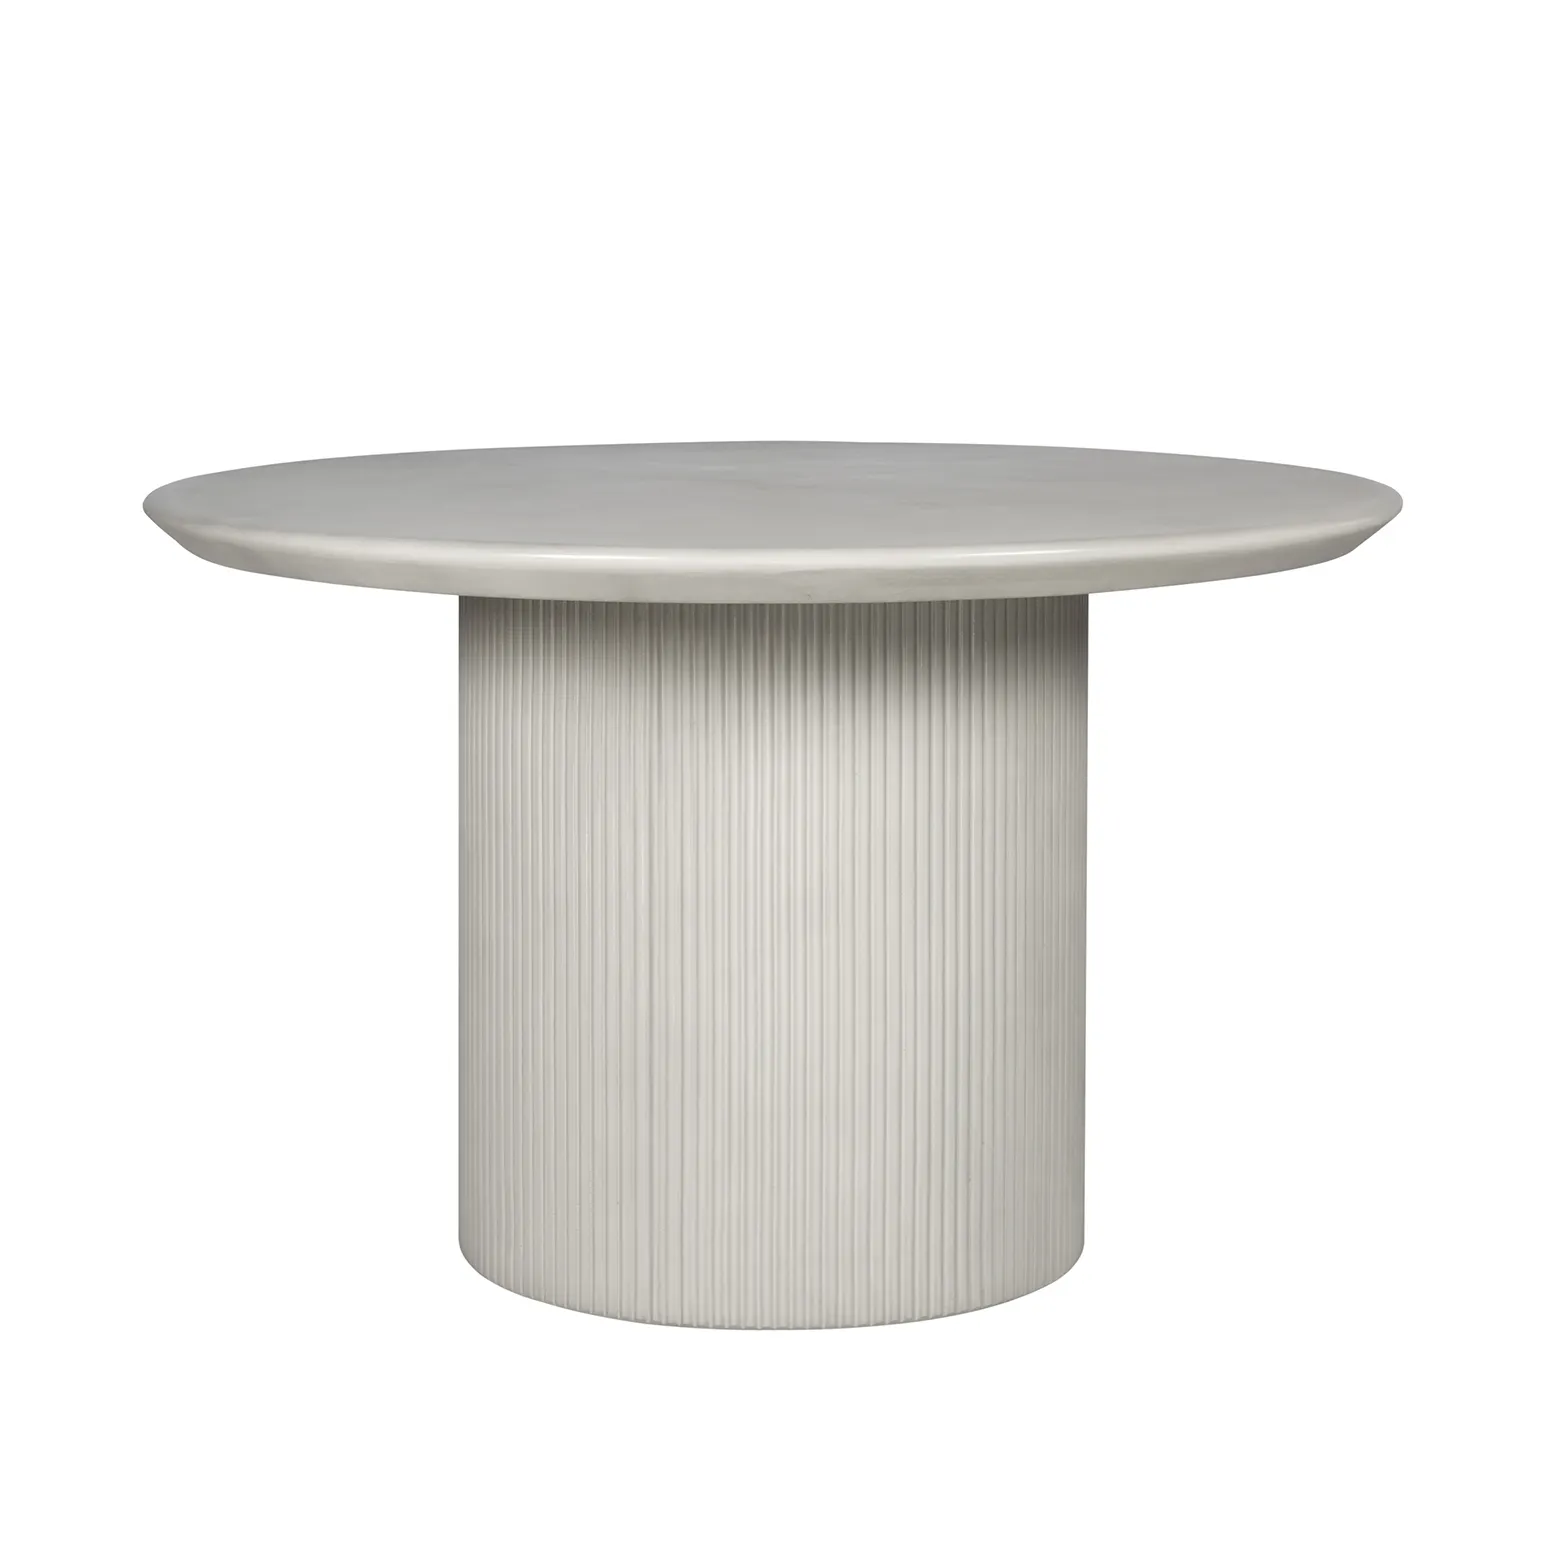 Table de salle à manger de meubles de conception chaude beau style décoration de la maison jardin table de salle à manger ronde décorative extérieure en béton